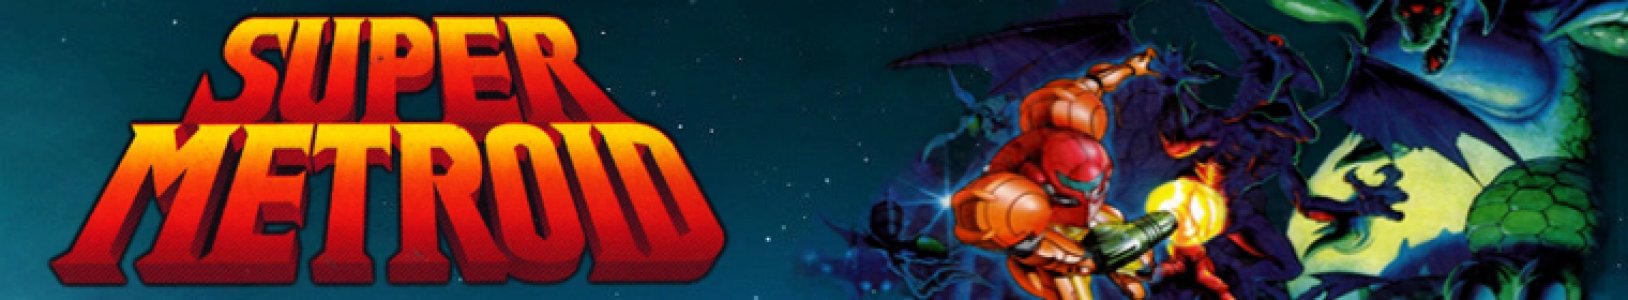 Super Metroid banner